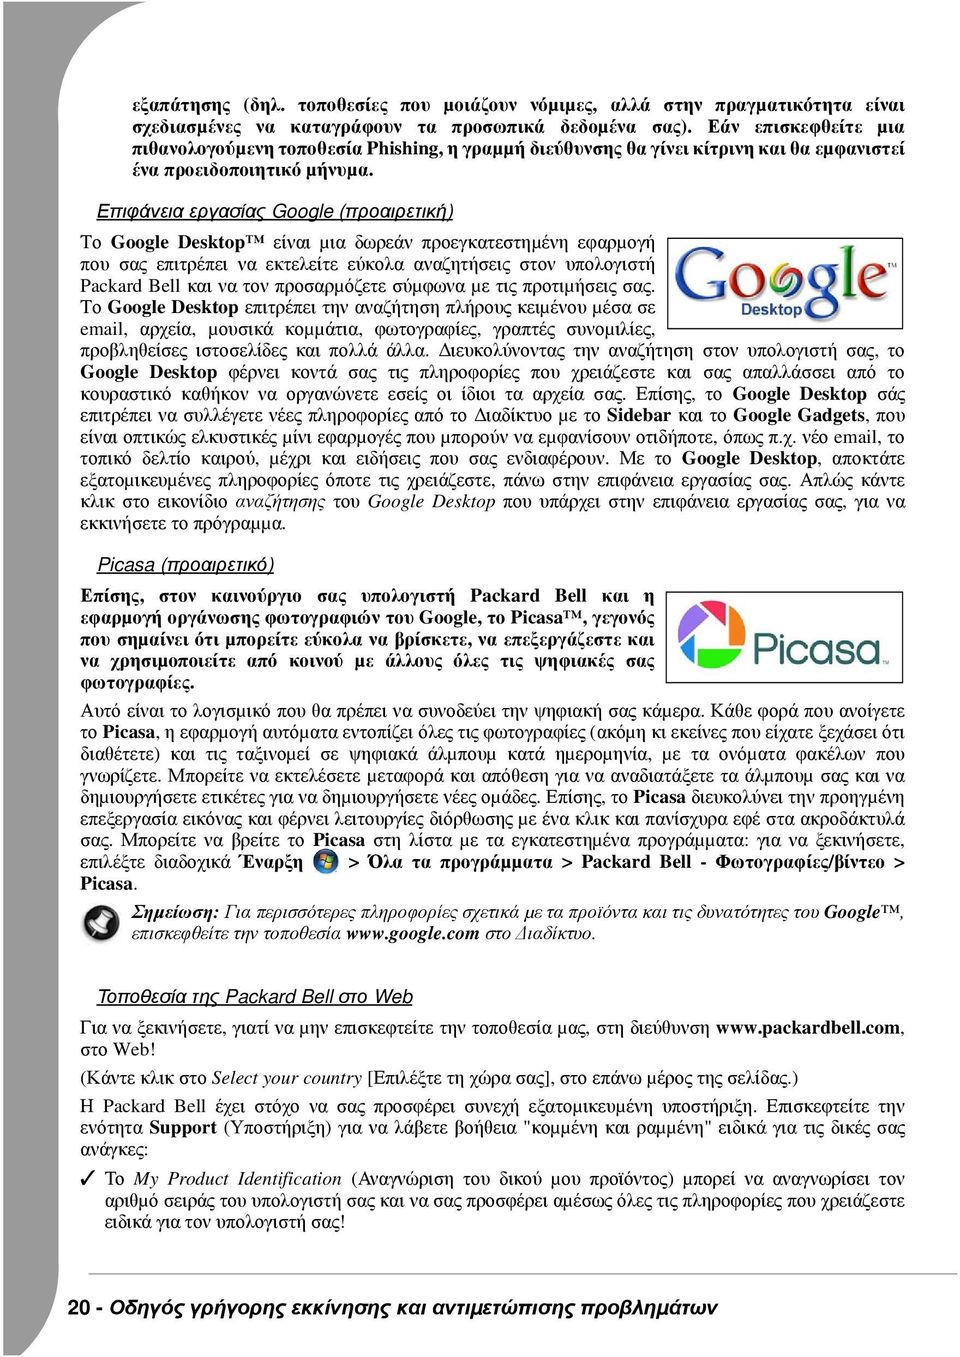 Επιφάνεια εργασίας Google (προαιρετική) Το Google Desktop είναι µια δωρεάν προεγκατεστηµένη εφαρµογή που σας επιτρέπει να εκτελείτε εύκολα αναζητήσεις στον υπολογιστή Packard Bell και να τον